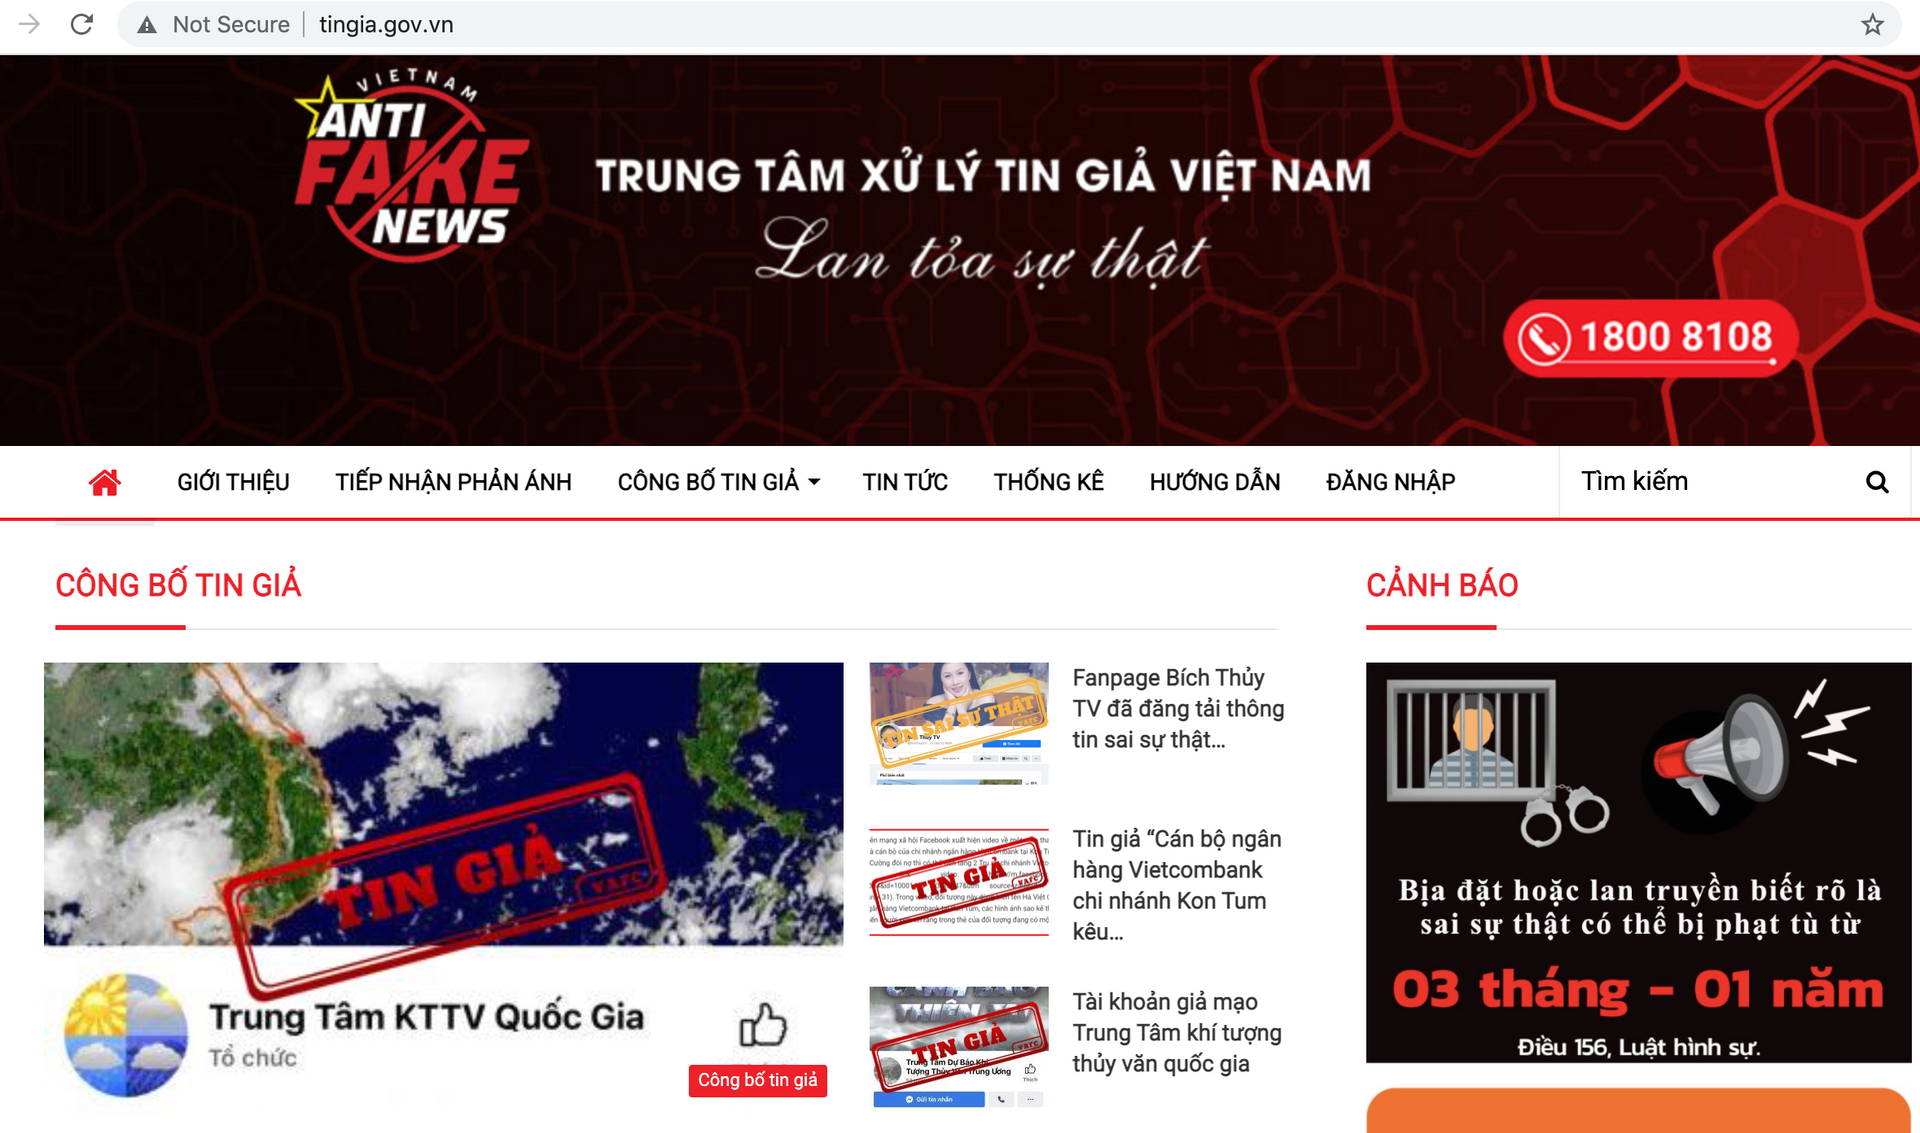 Việt Nam công bố nền tảng chuyển đổi số cho cơ quan báo chí, trung tâm xử lý tin giả - Ảnh 4.